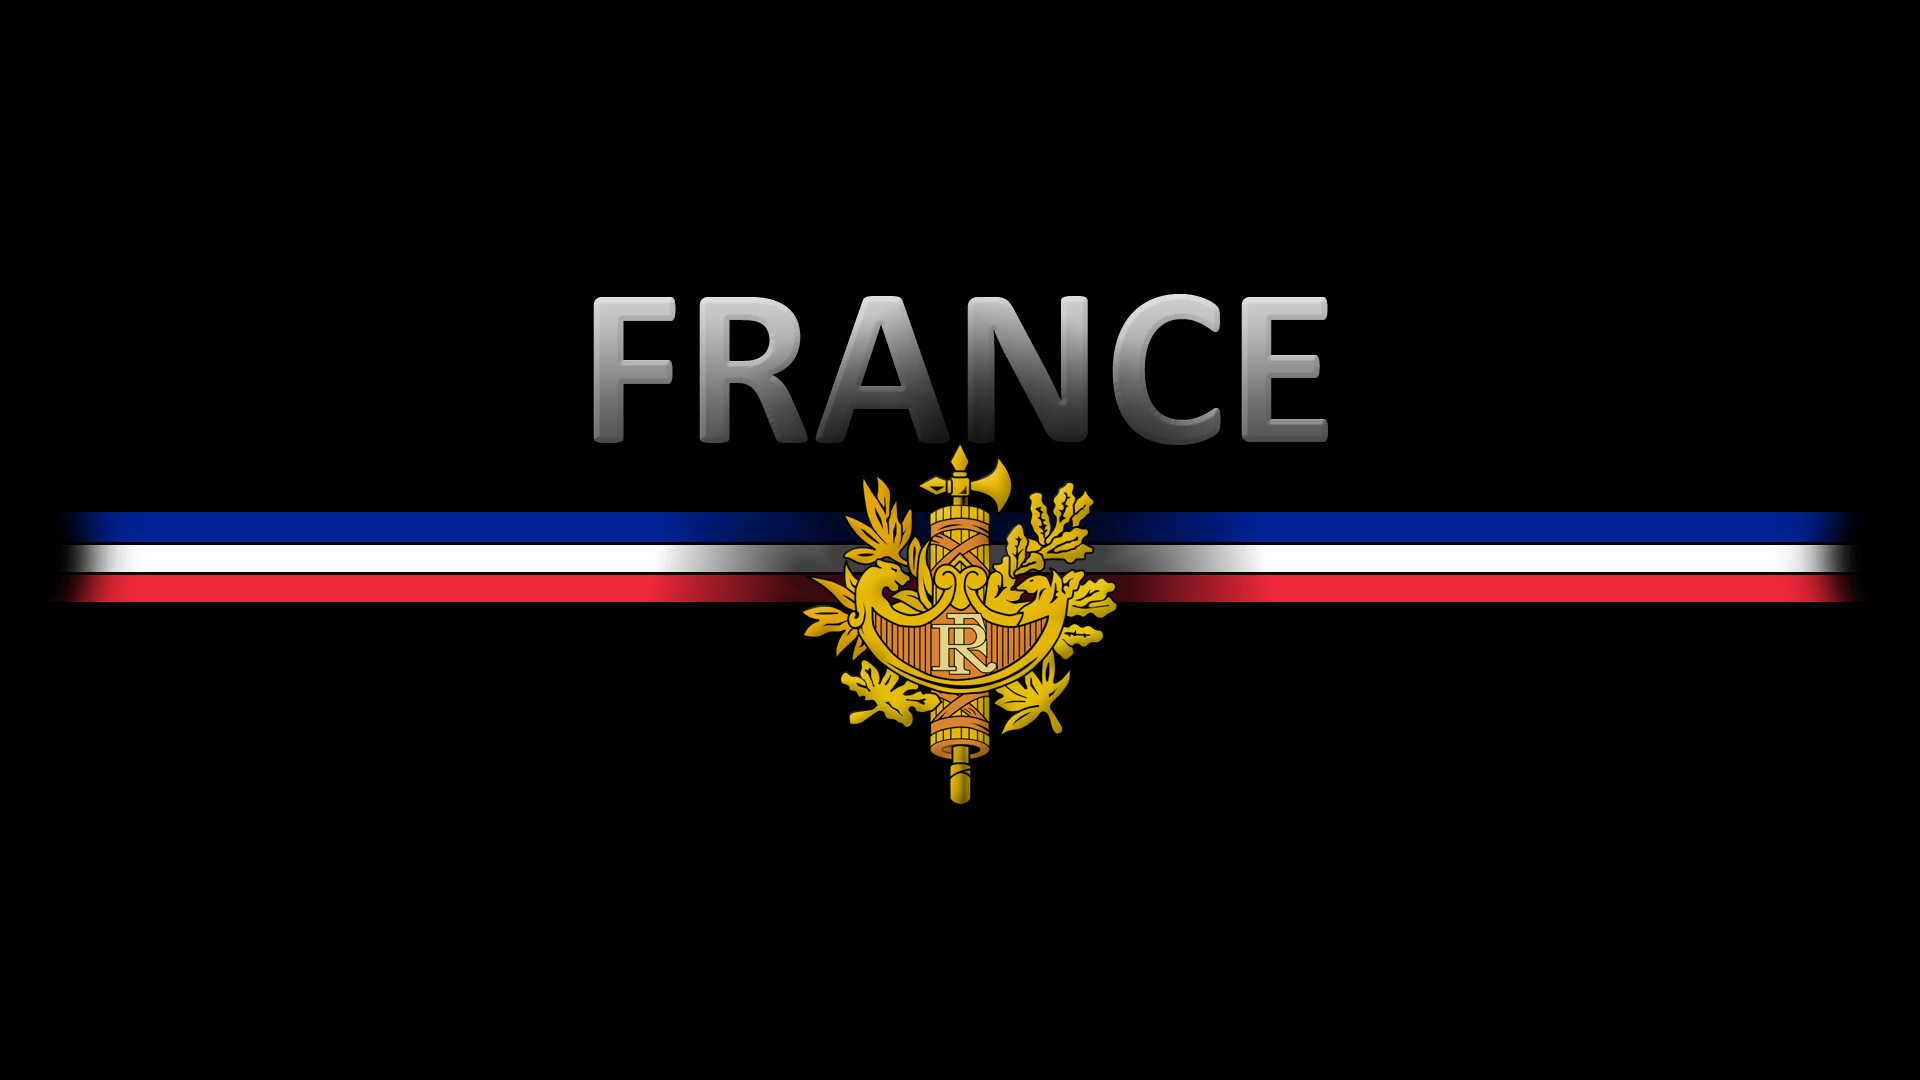 France crest flag wallpaperx1080